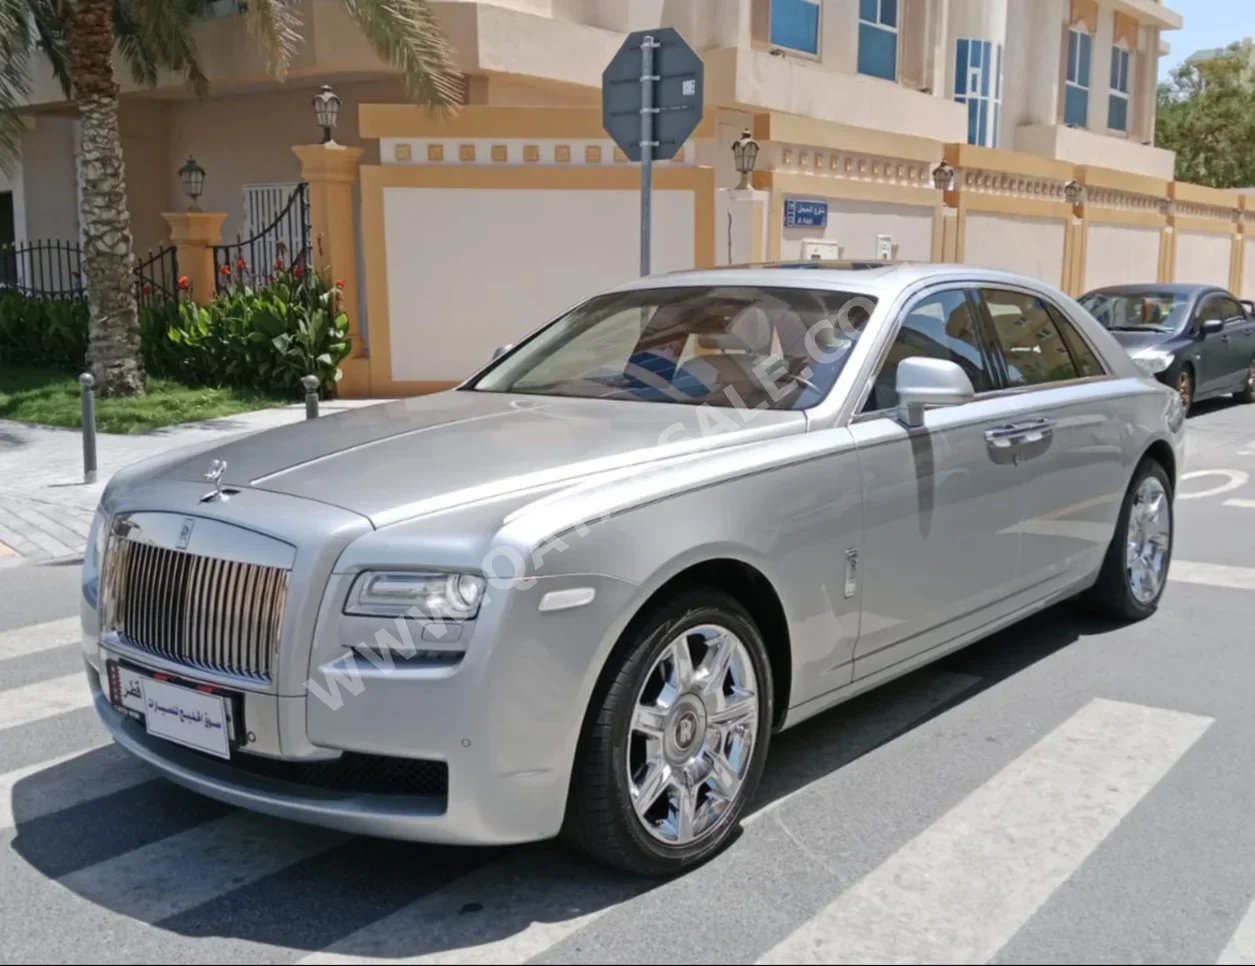 Rolls-Royce  Ghost  2012  Automatic  74,000 Km  12 Cylinder  All Wheel Drive (AWD)  Sedan  Silver